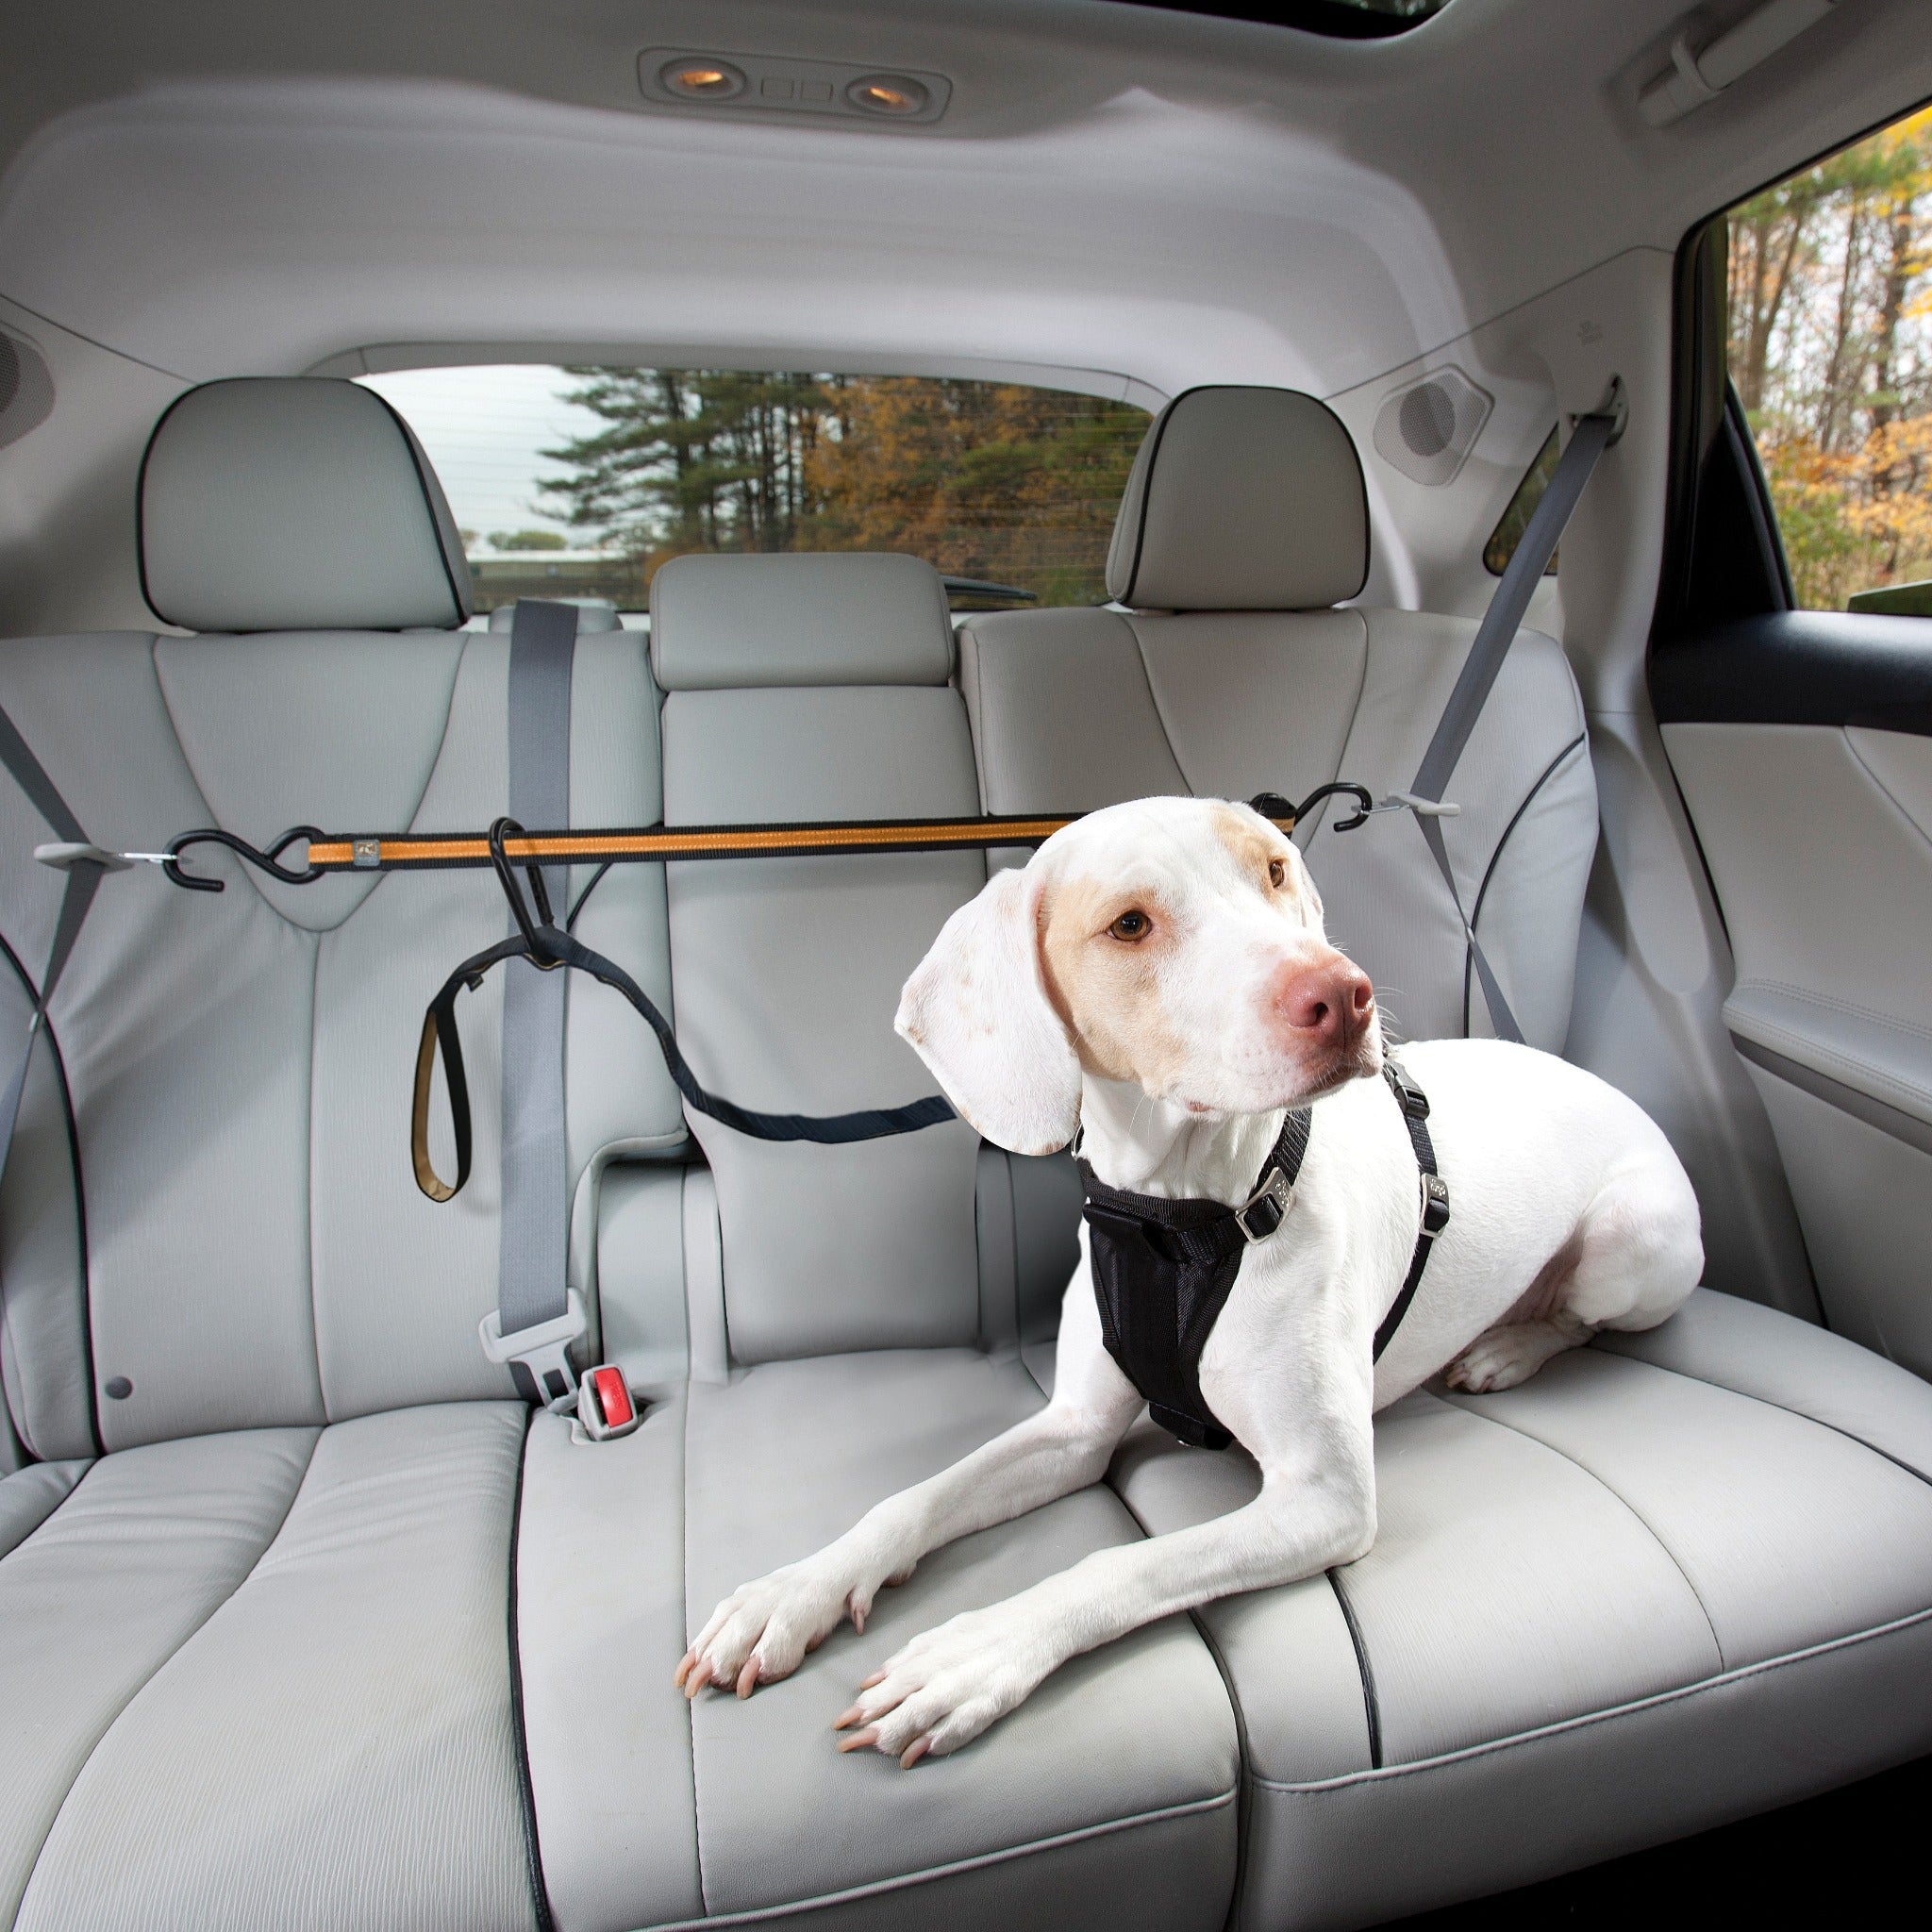 IOKHEIRA Hunde Sicherheitsgurt für Auto, Hundegurt fürs Auto